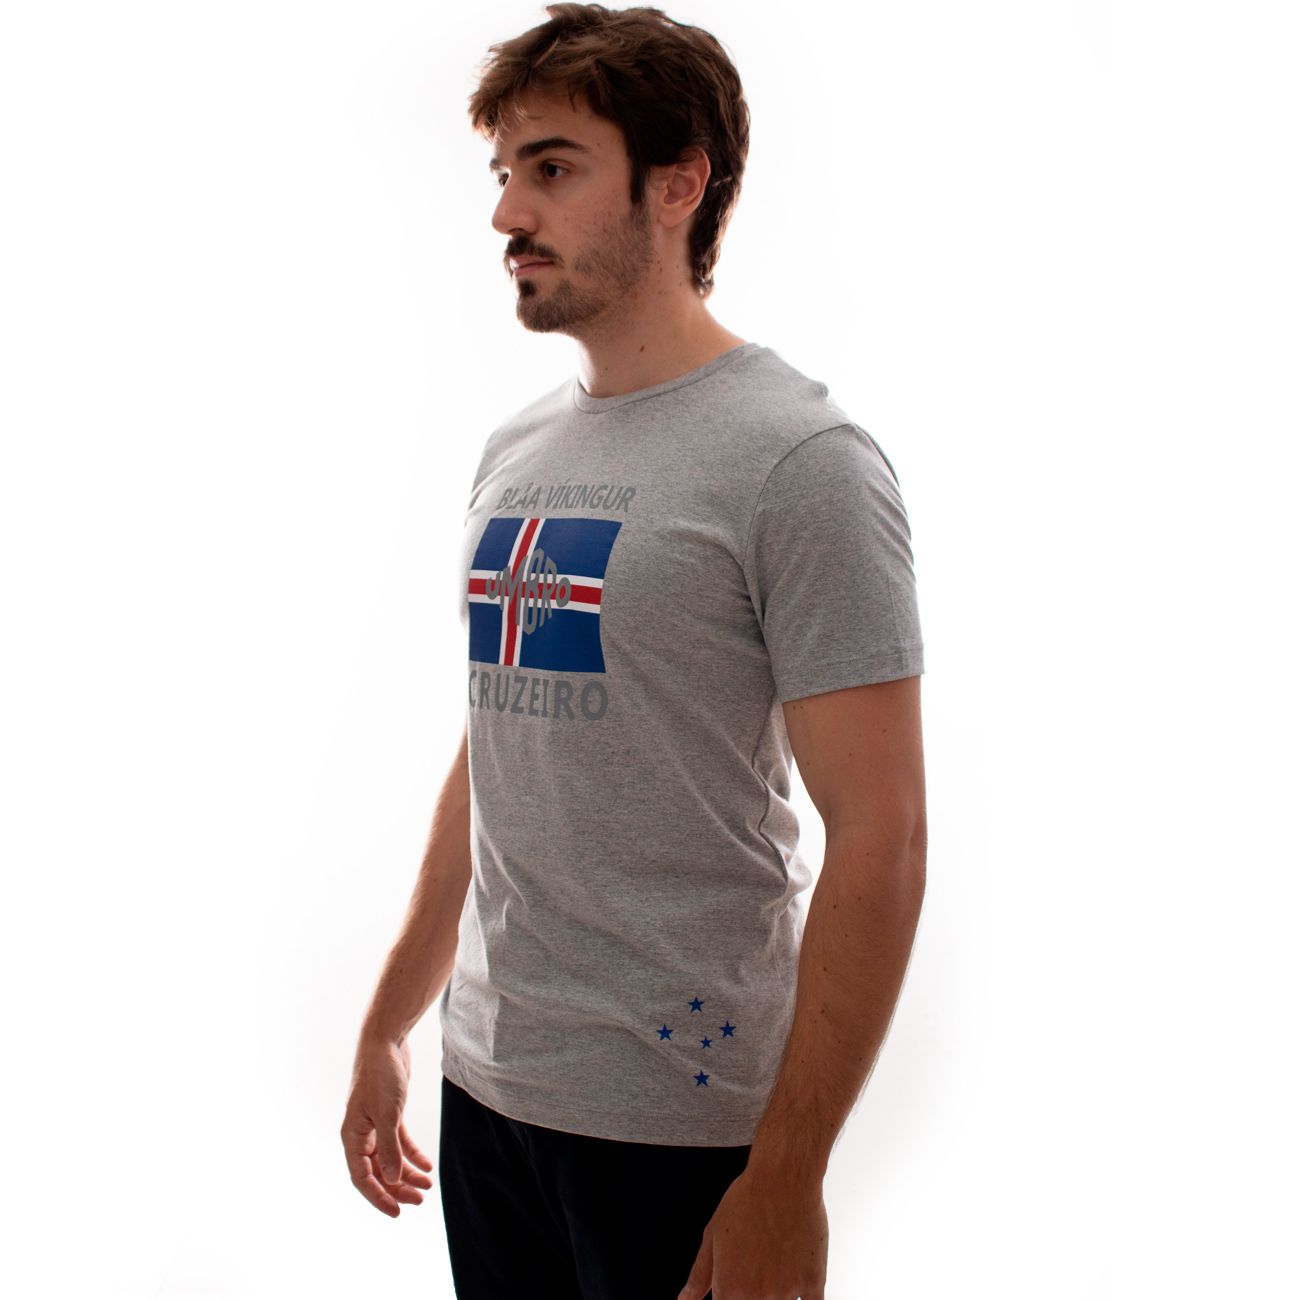 Camiseta Umbro Cruzeiro Blar Viking  - SPORTIME